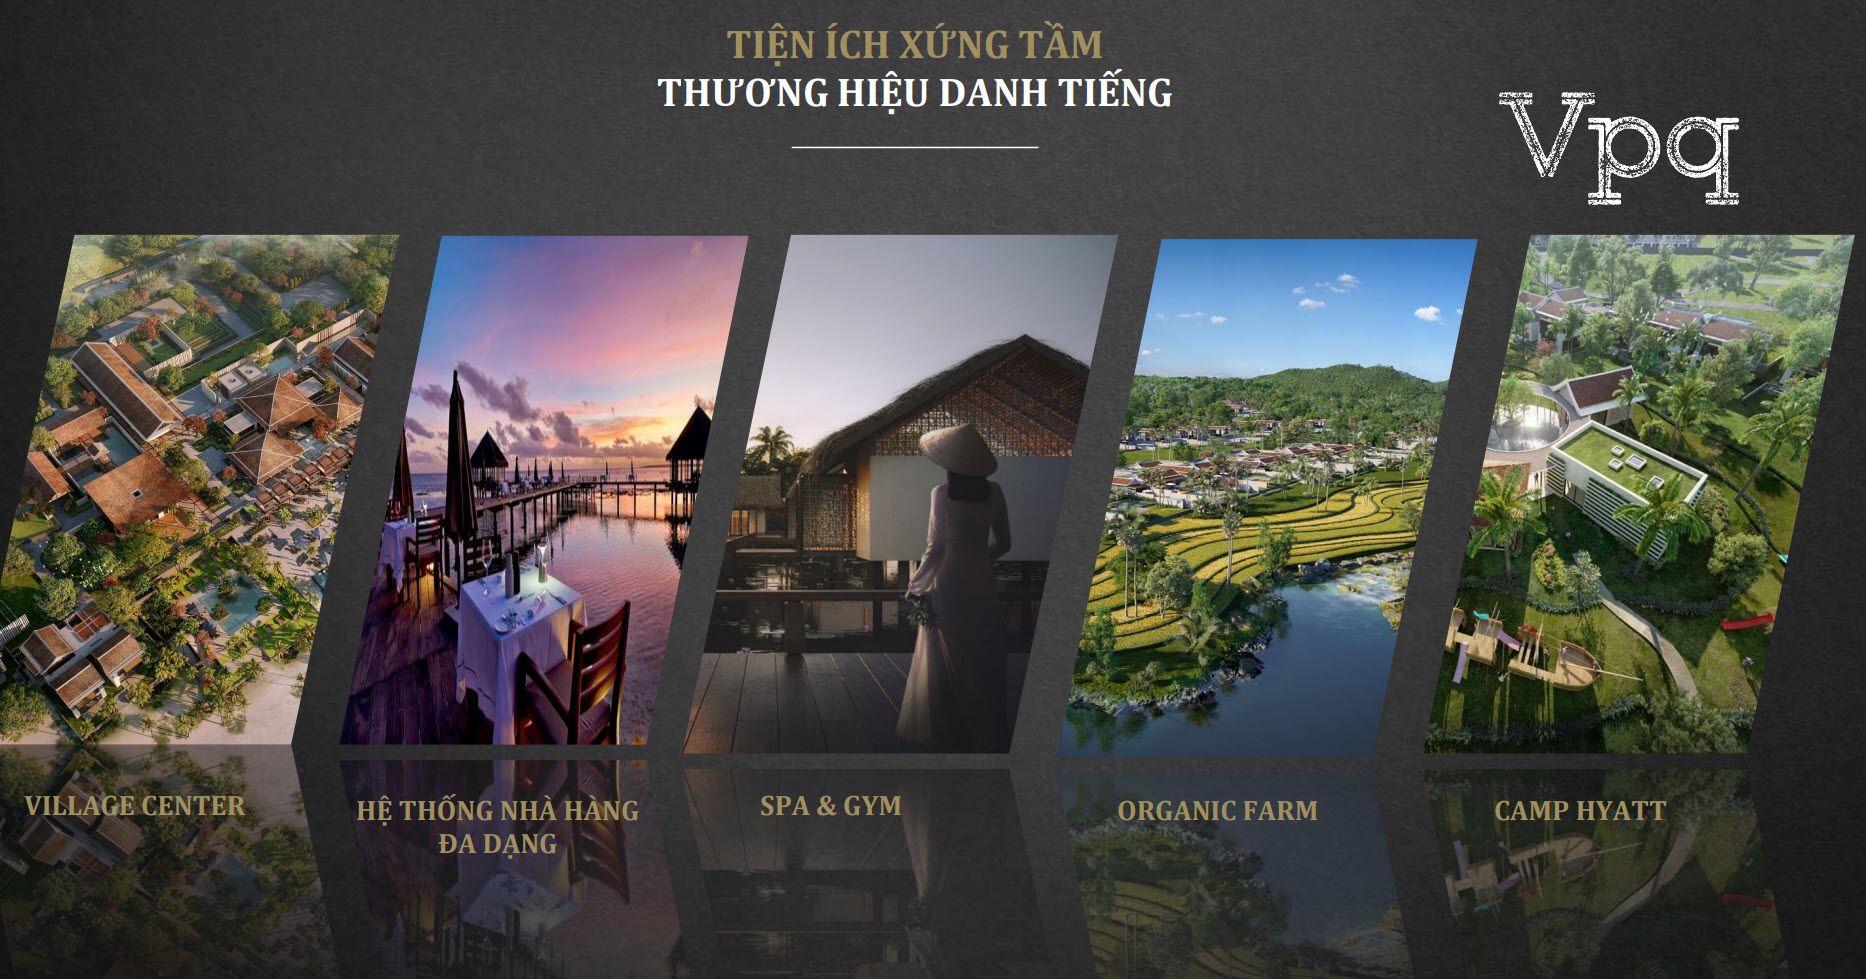 Tiện ích xứng tầm Park Hyatt Phu Quoc Residences